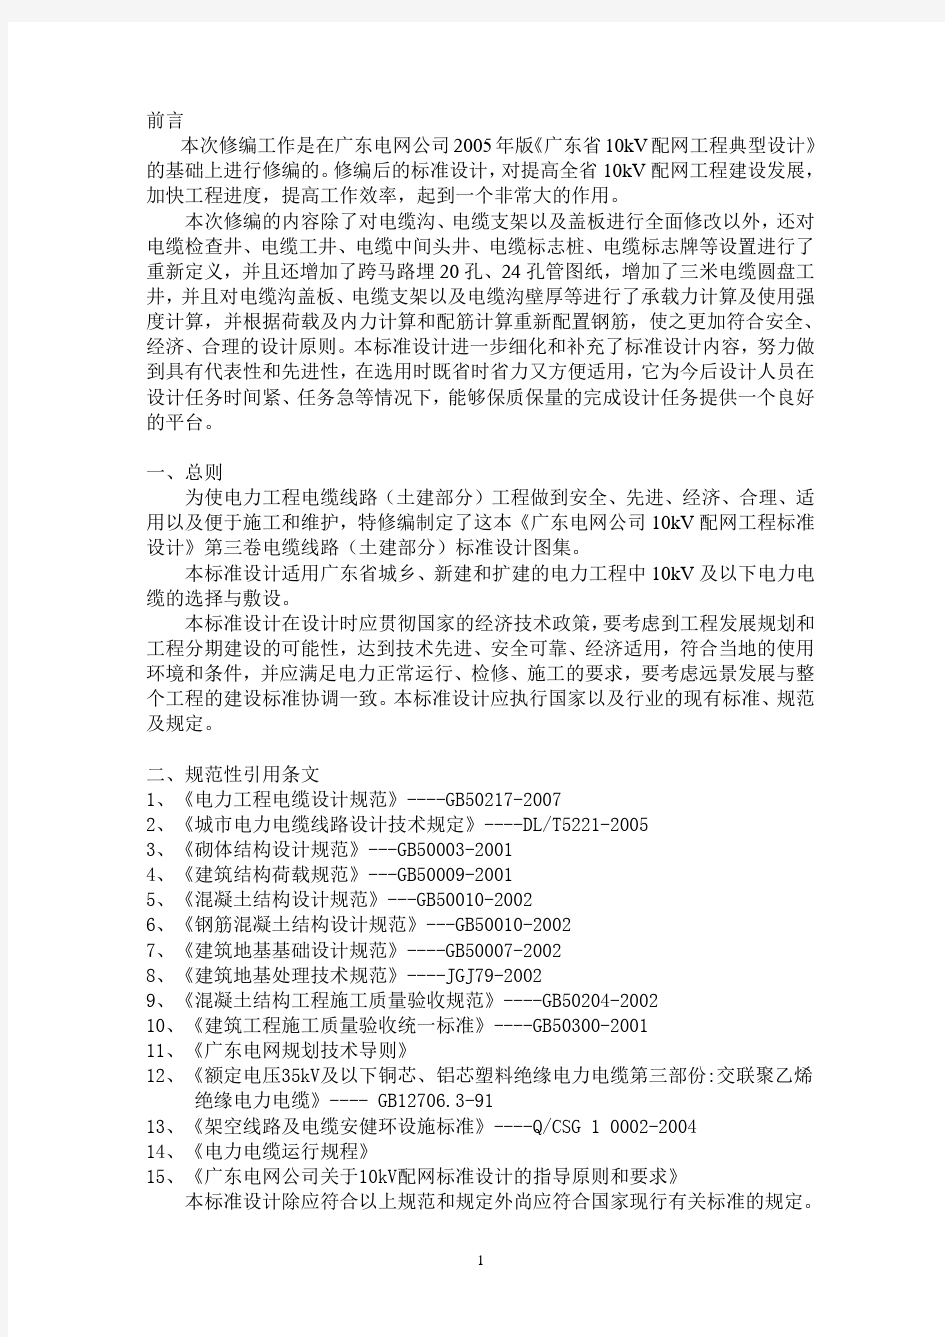 广东电网公司10kV配网工程标准设计(电缆线路部分)培训稿